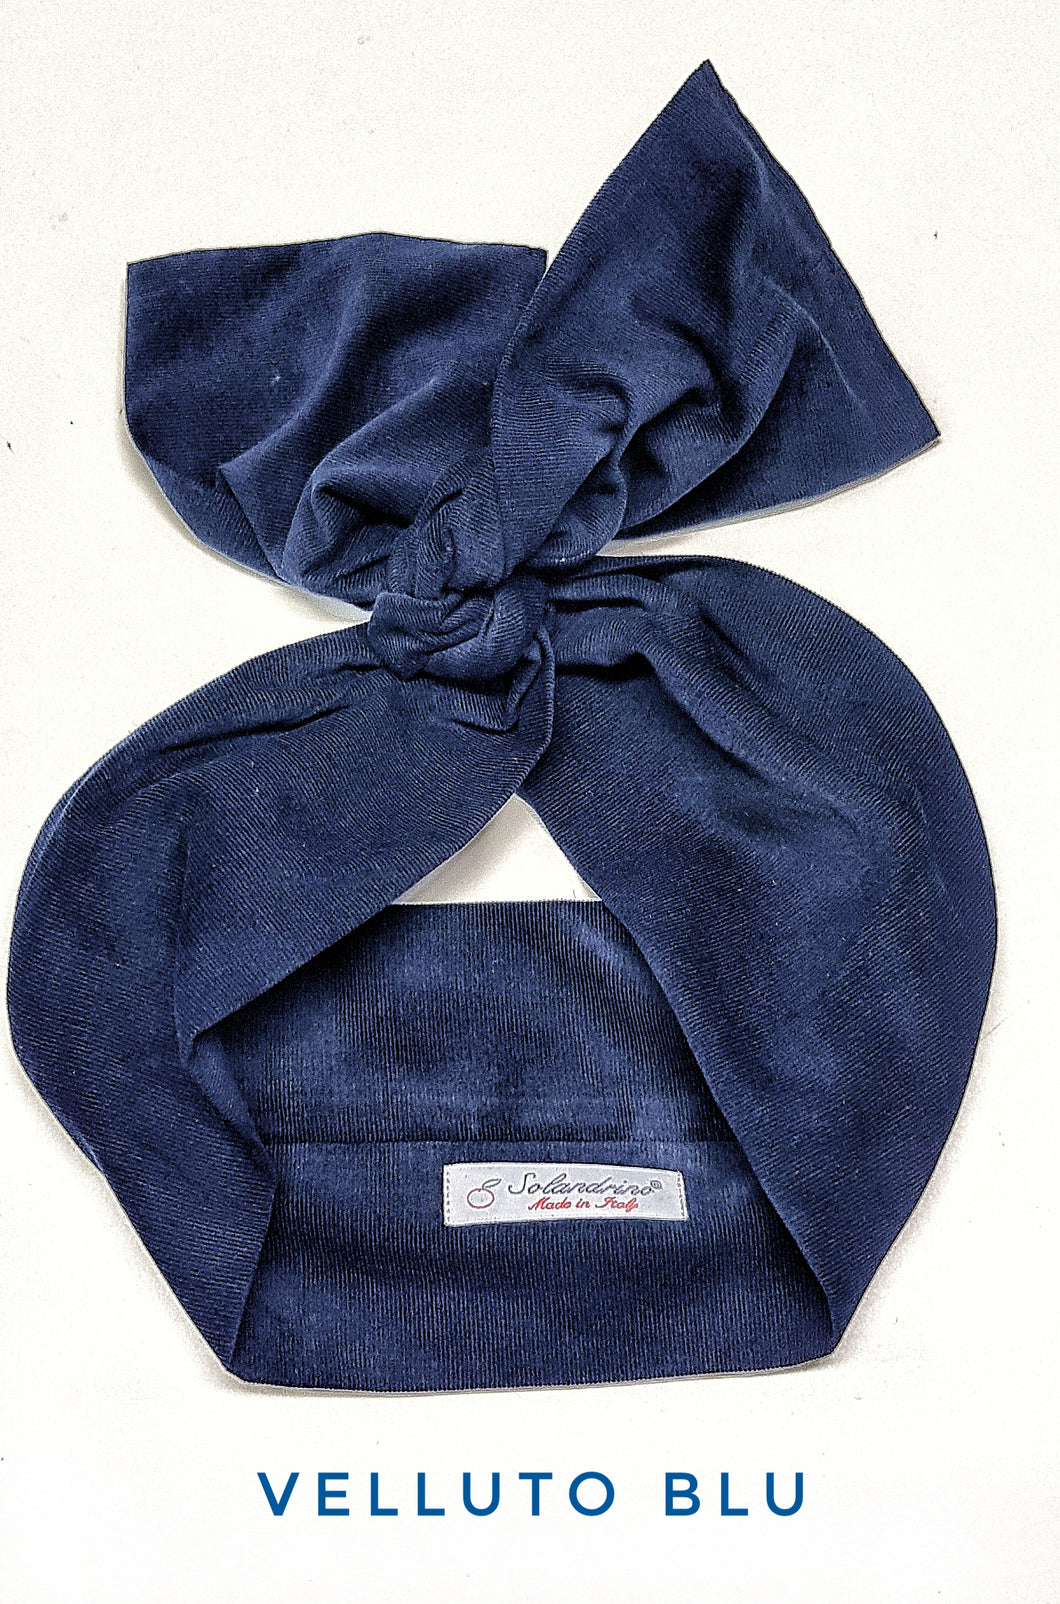 Turbante Fashion in cotone fascia capelli design Velluto blu made in Italy